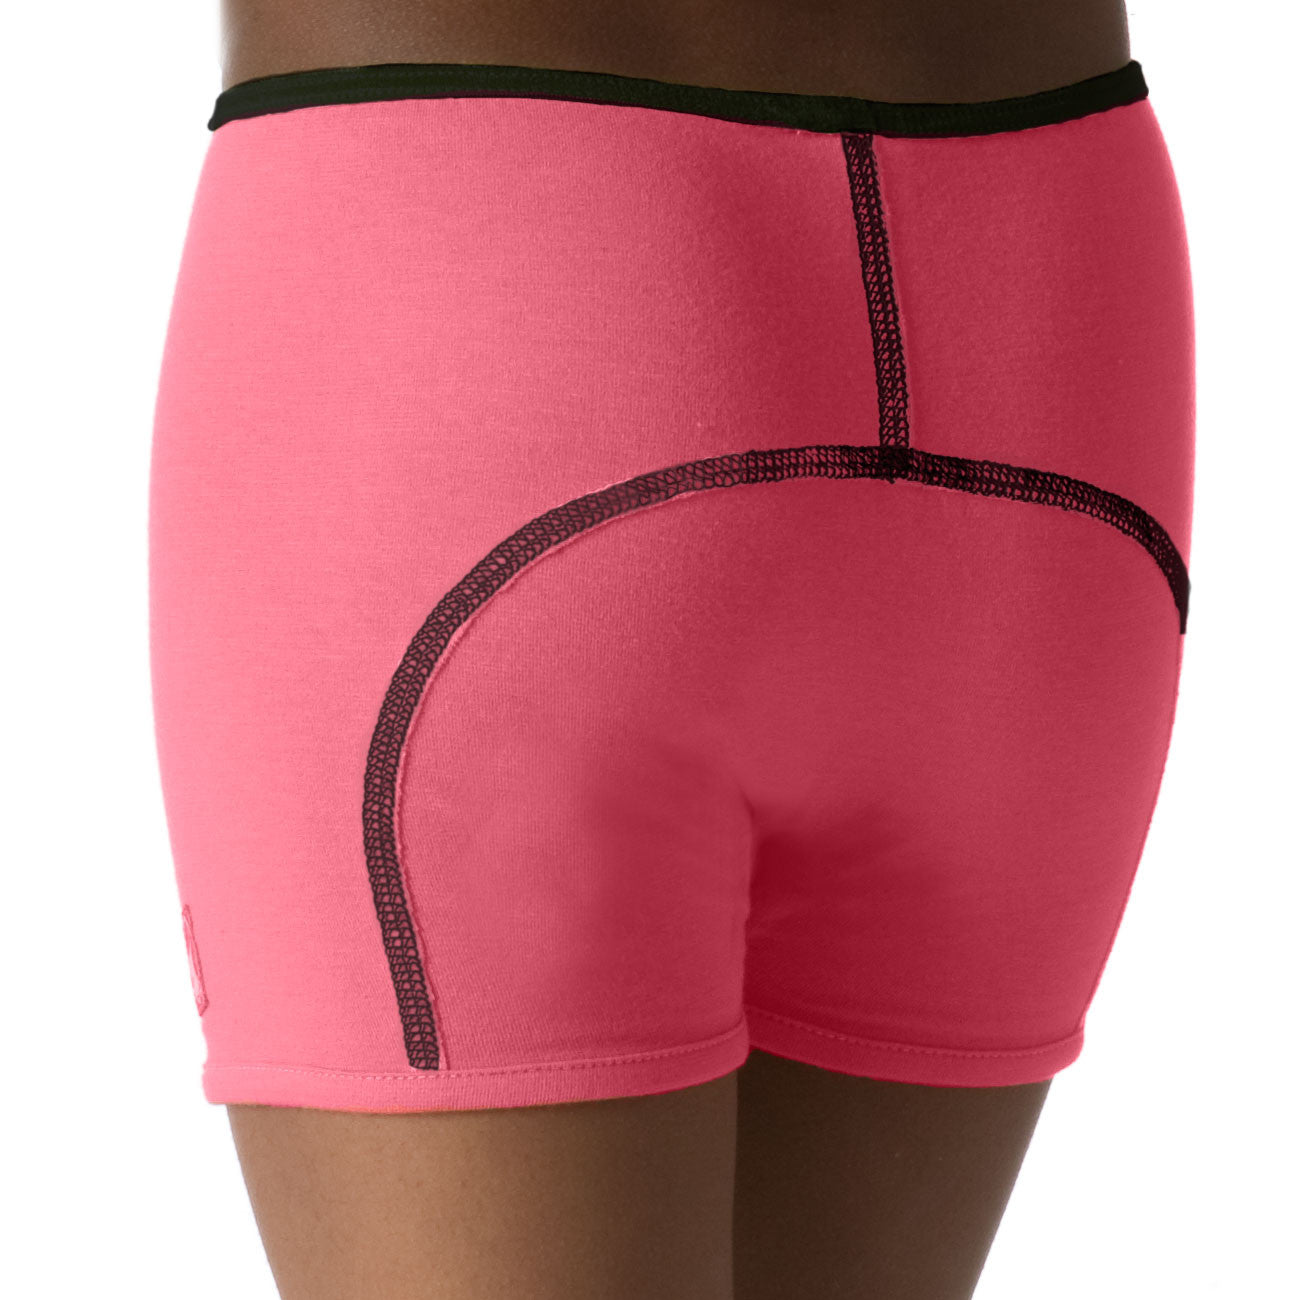 Boxerbocker Underwear - Hot Pink